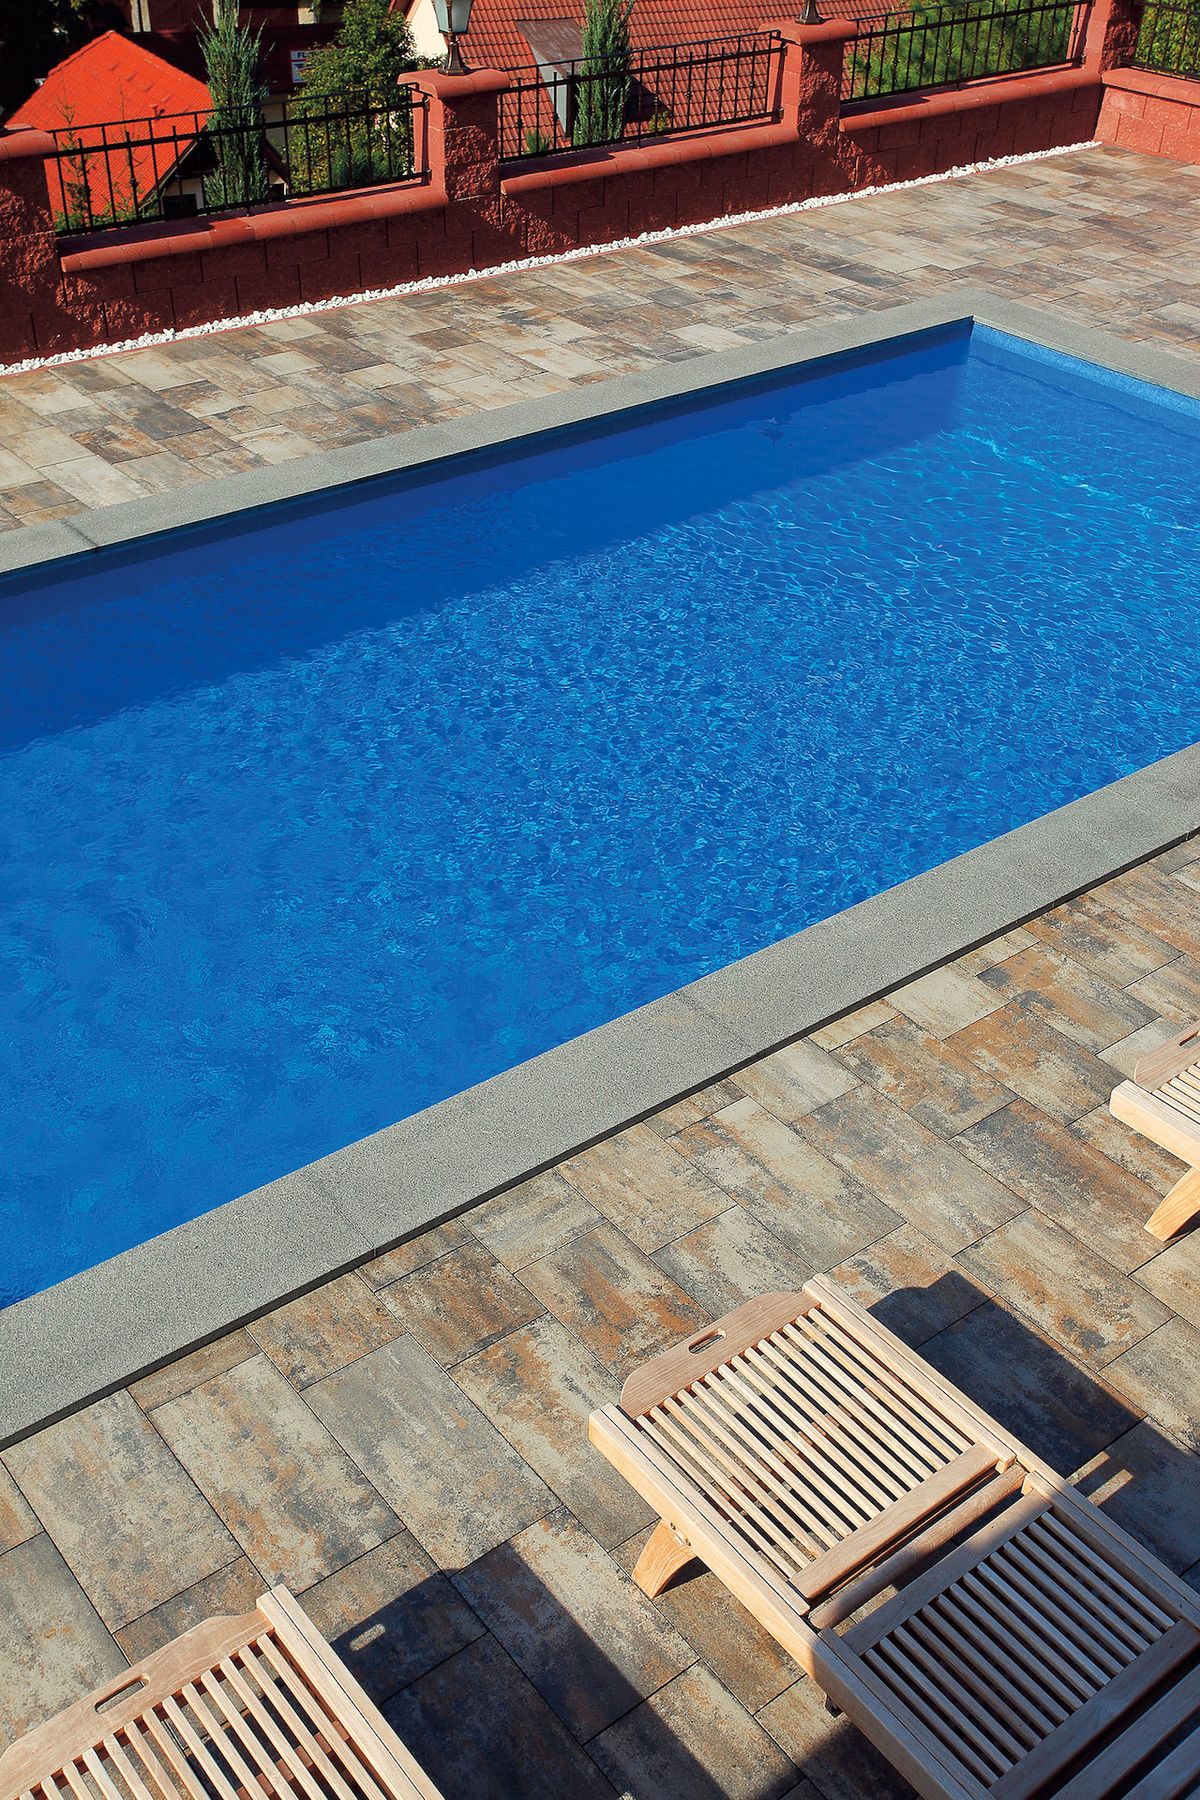 Terasu u domu a v okolí bazénu lze řešit využitím betonové dlažby Best. Na výběr máme z mnoha barevných odstínů, designů a úprav povrchu.